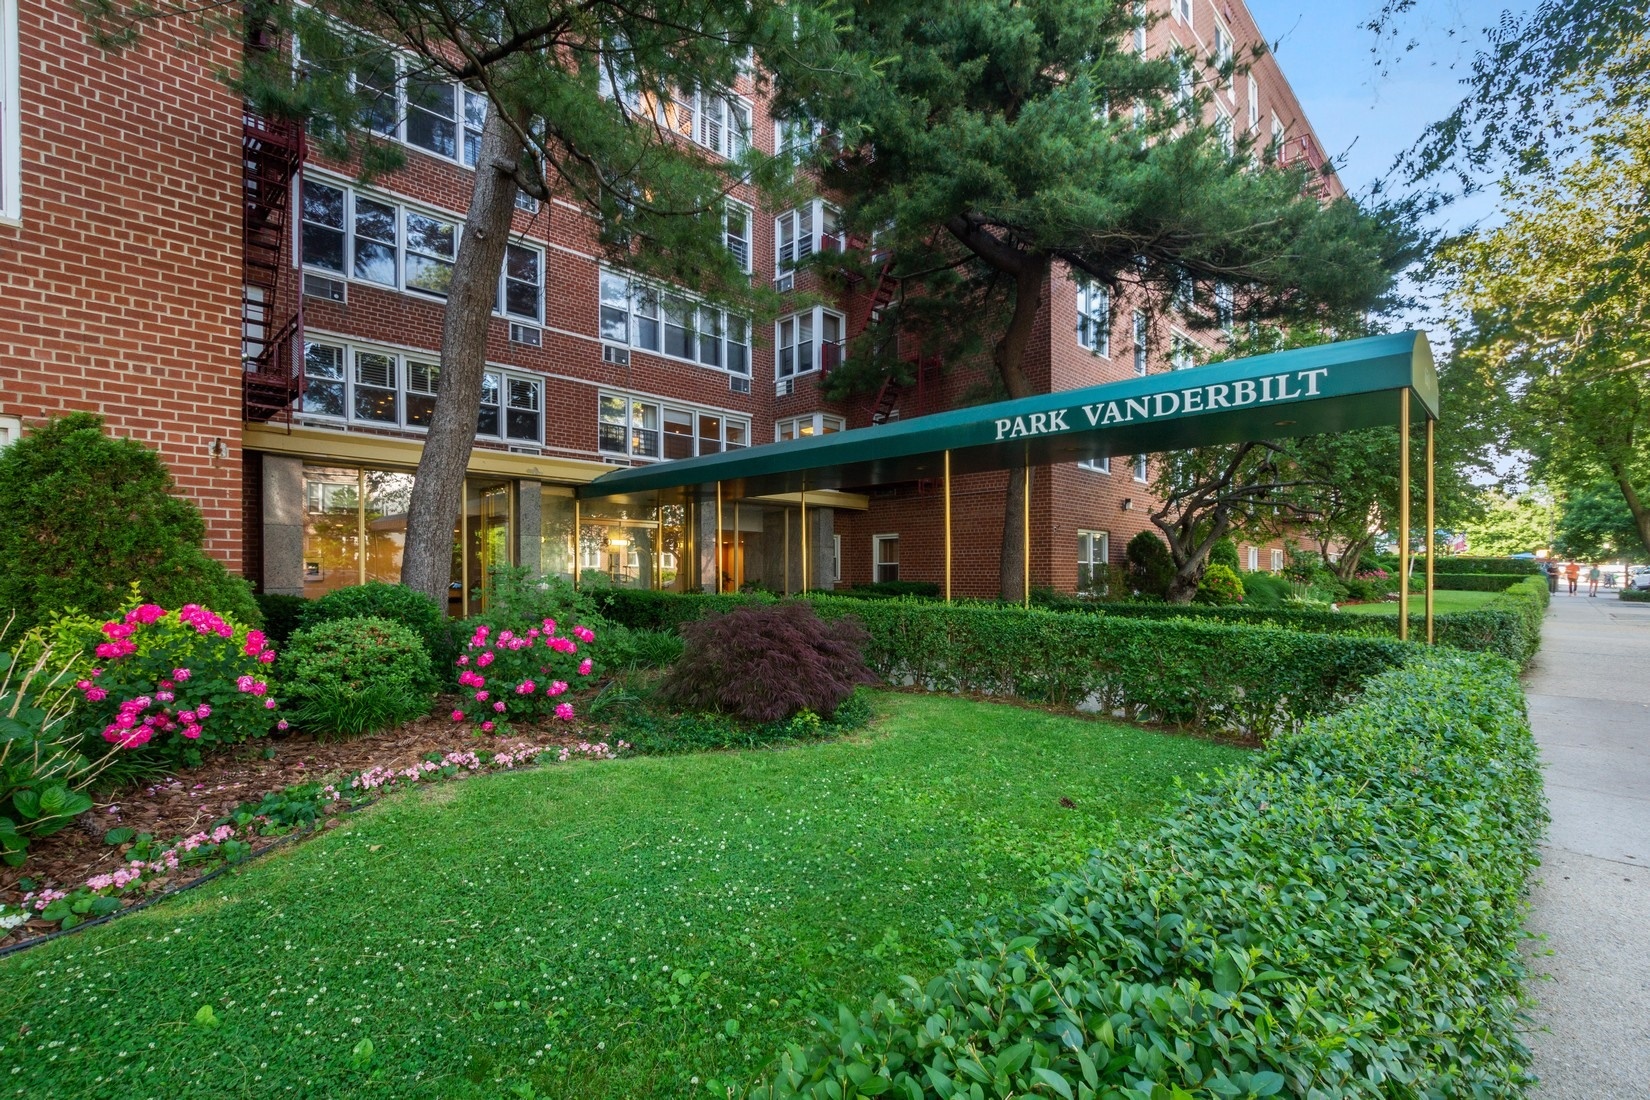 Park Vanderbilt